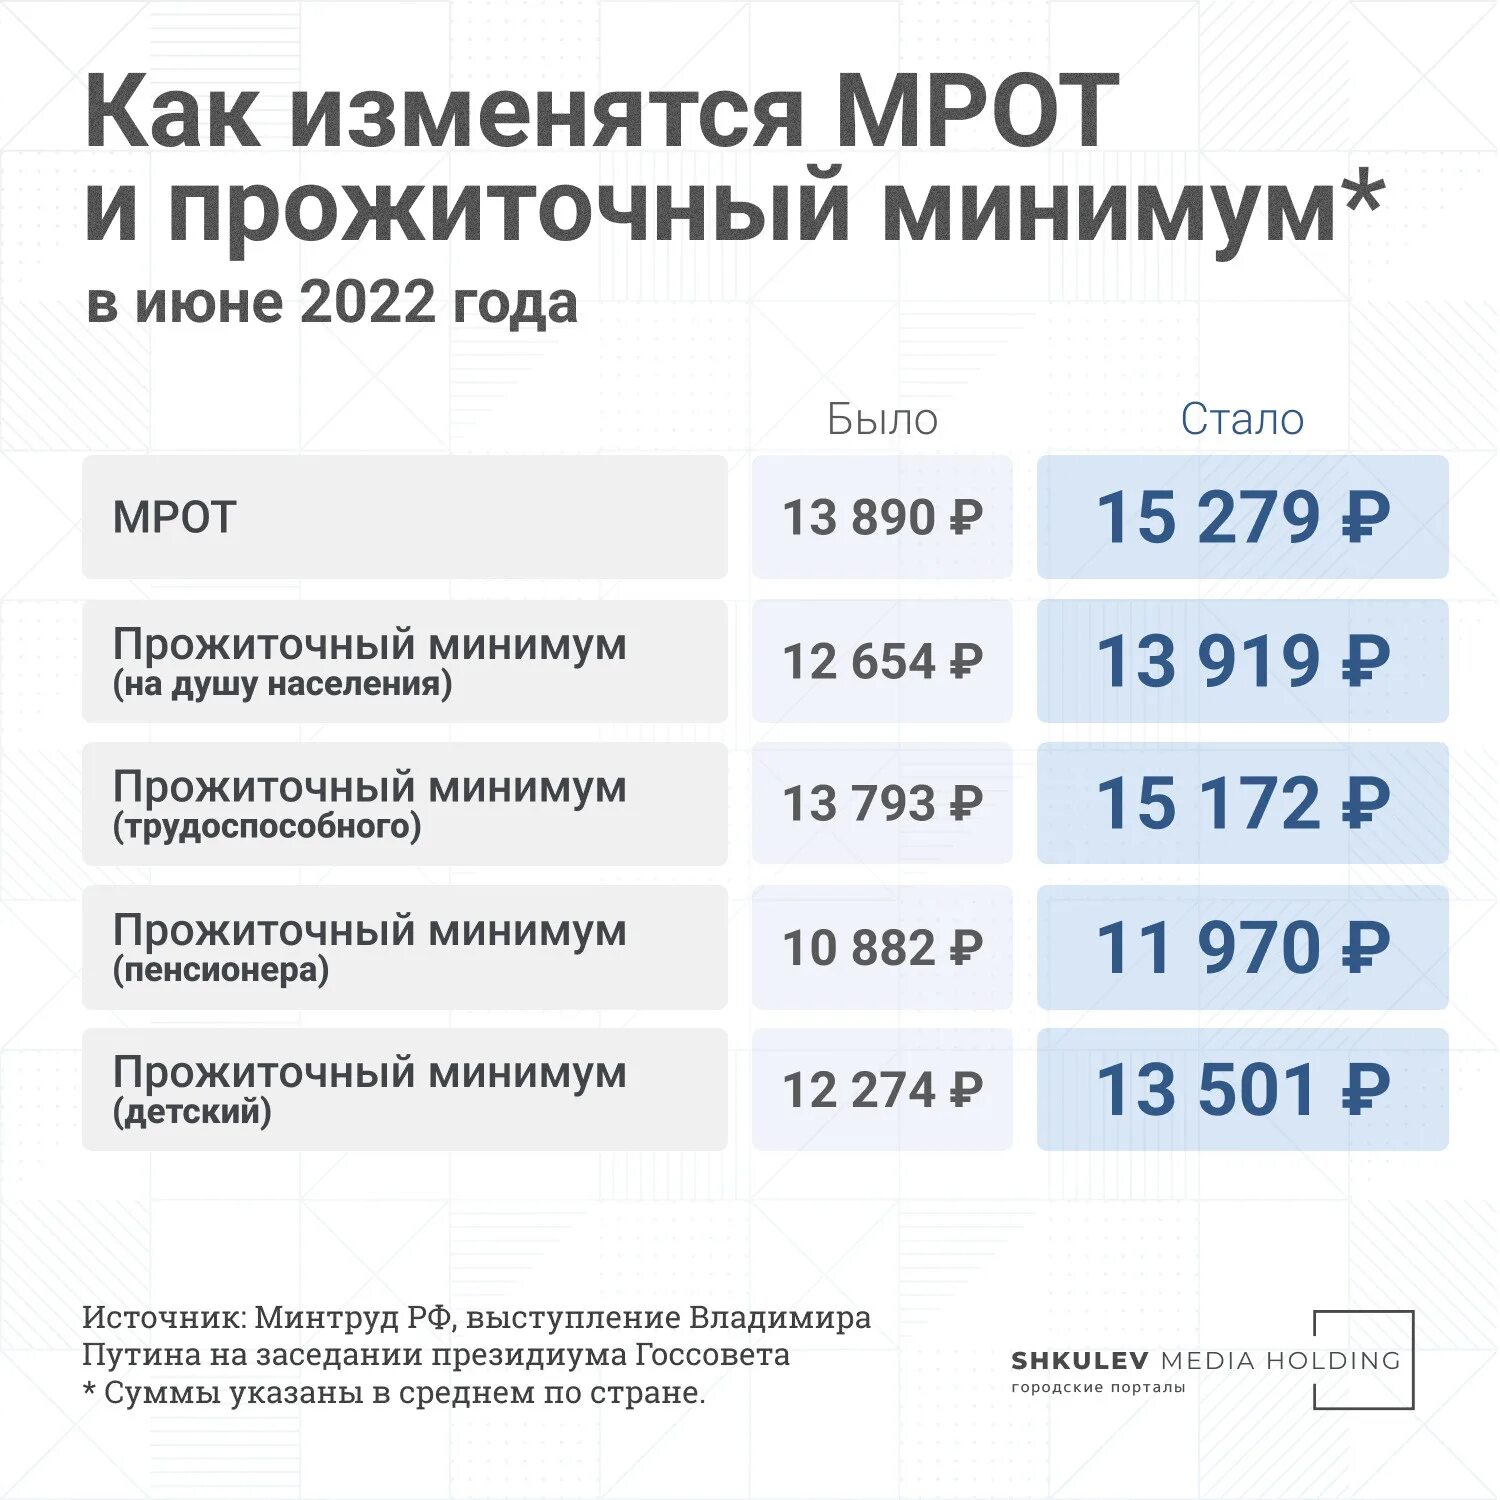 Детские выплаты с 1 апреля 2024. Прожиточный минимум в прошлом году в России 2023. МРОТ С июня 2022. МРОТ И прожиточный минимум 2022. Прожиточный минимум для трудоспособного населения в 2022.